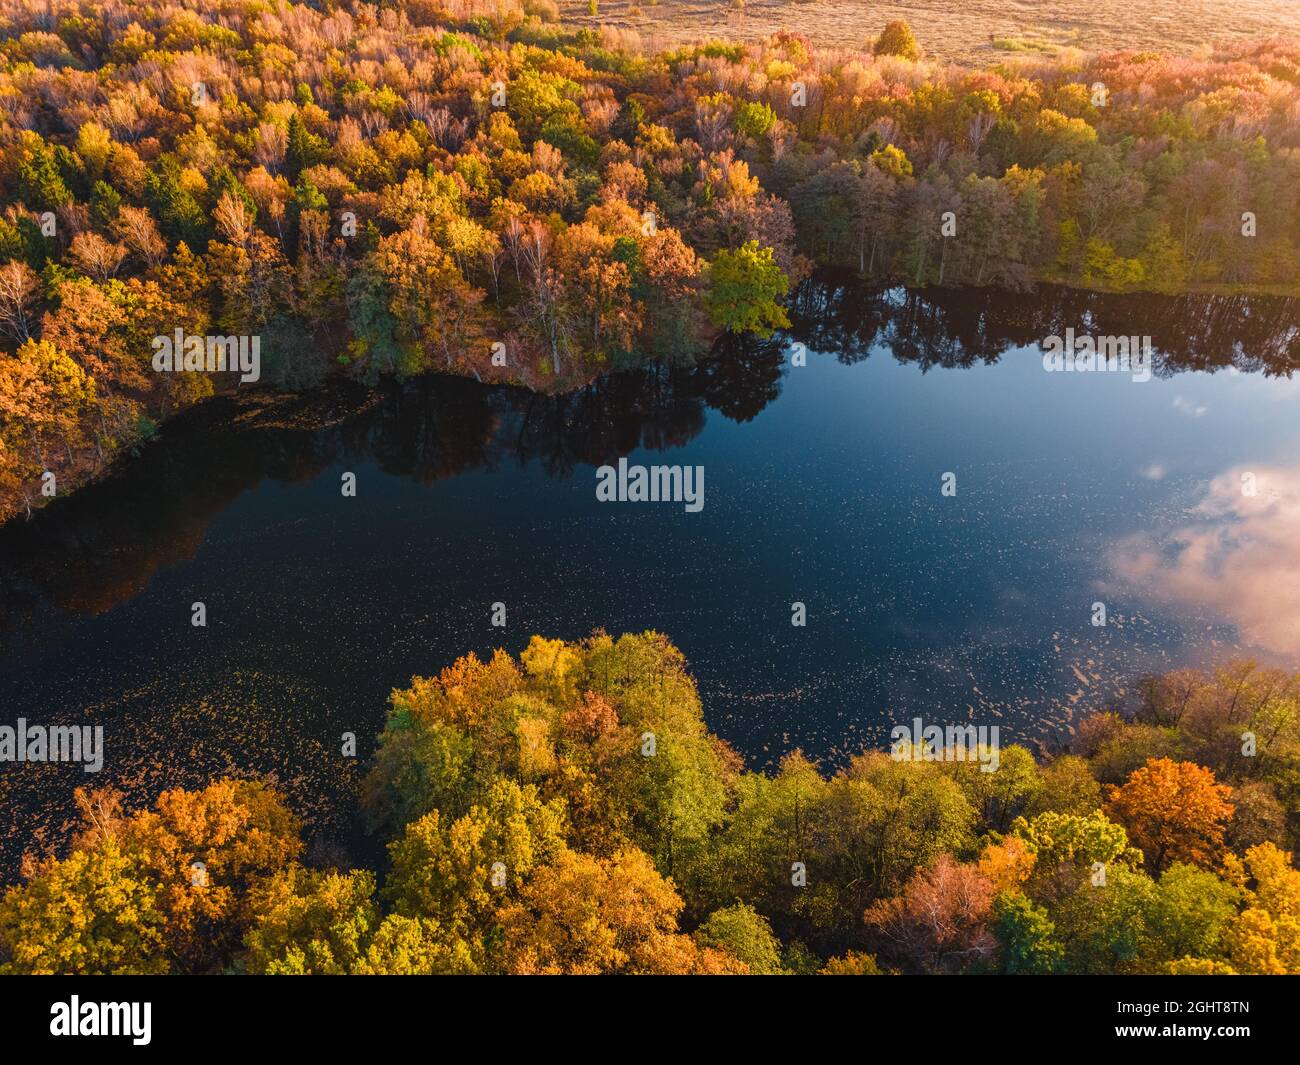 Veduta aerea del lago nella splendida foresta autunnale. Bellissimo paesaggio con alberi con foglie verdi, rosse e arancioni. Vista dall'alto dal drone Foto Stock